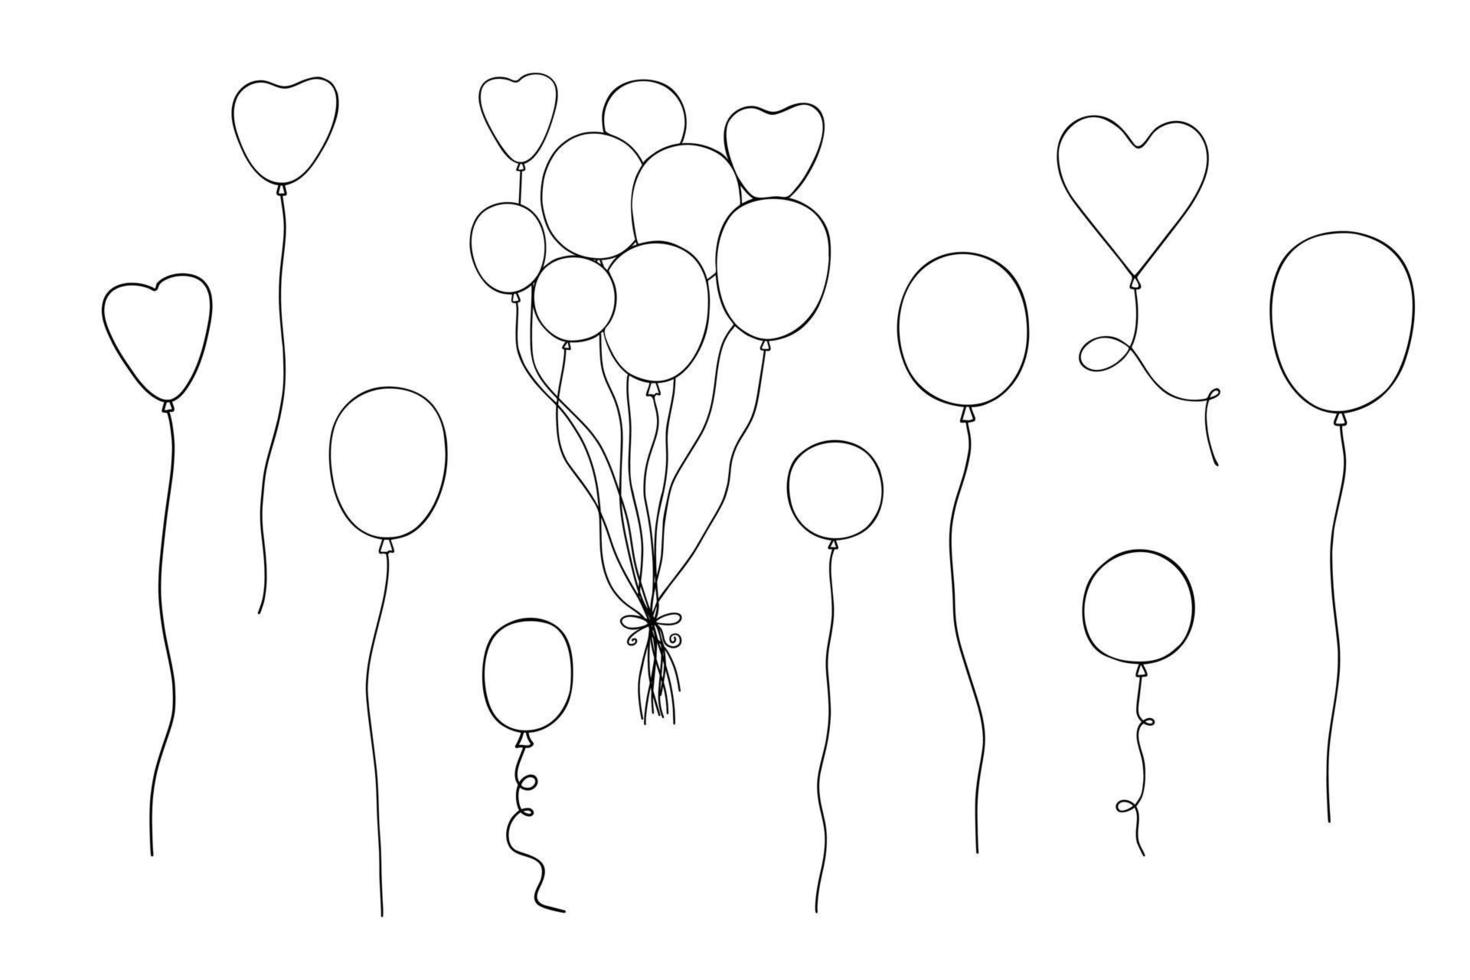 ballons sertis de rubans illustration vectorielle dans un style simple dessiné à la main pour la saint-valentin amour et émotions accessoires de fête de vacances, décor de fêtes de famille vecteur